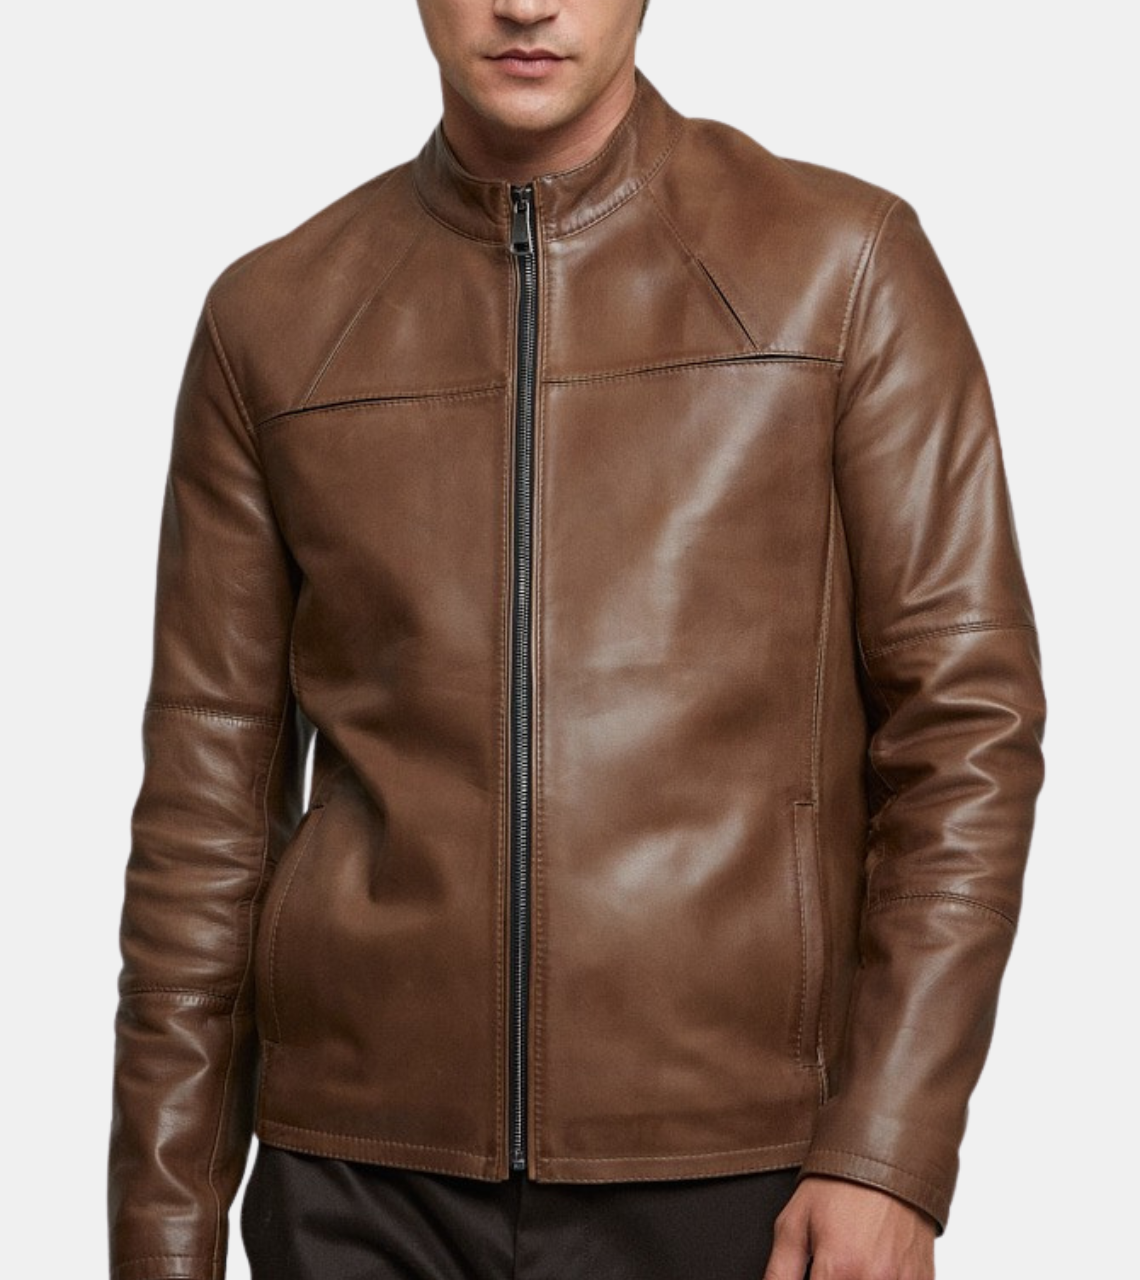 Spencer Men's Tan Brown Leather Jacket